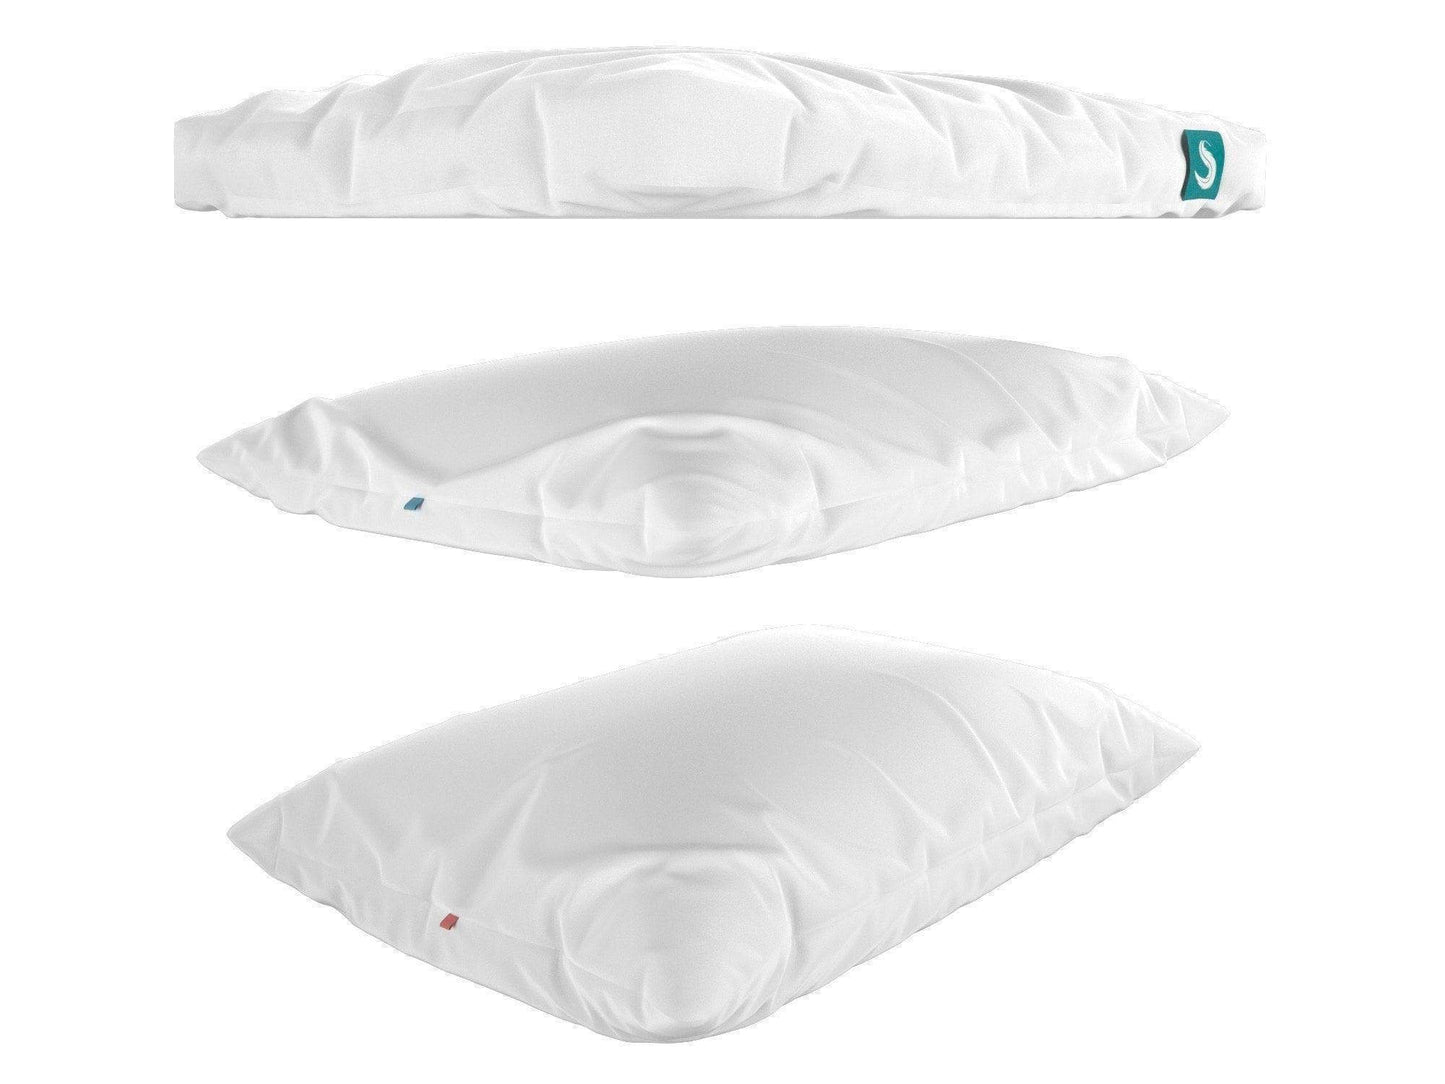 Sleepgram Pillow divided